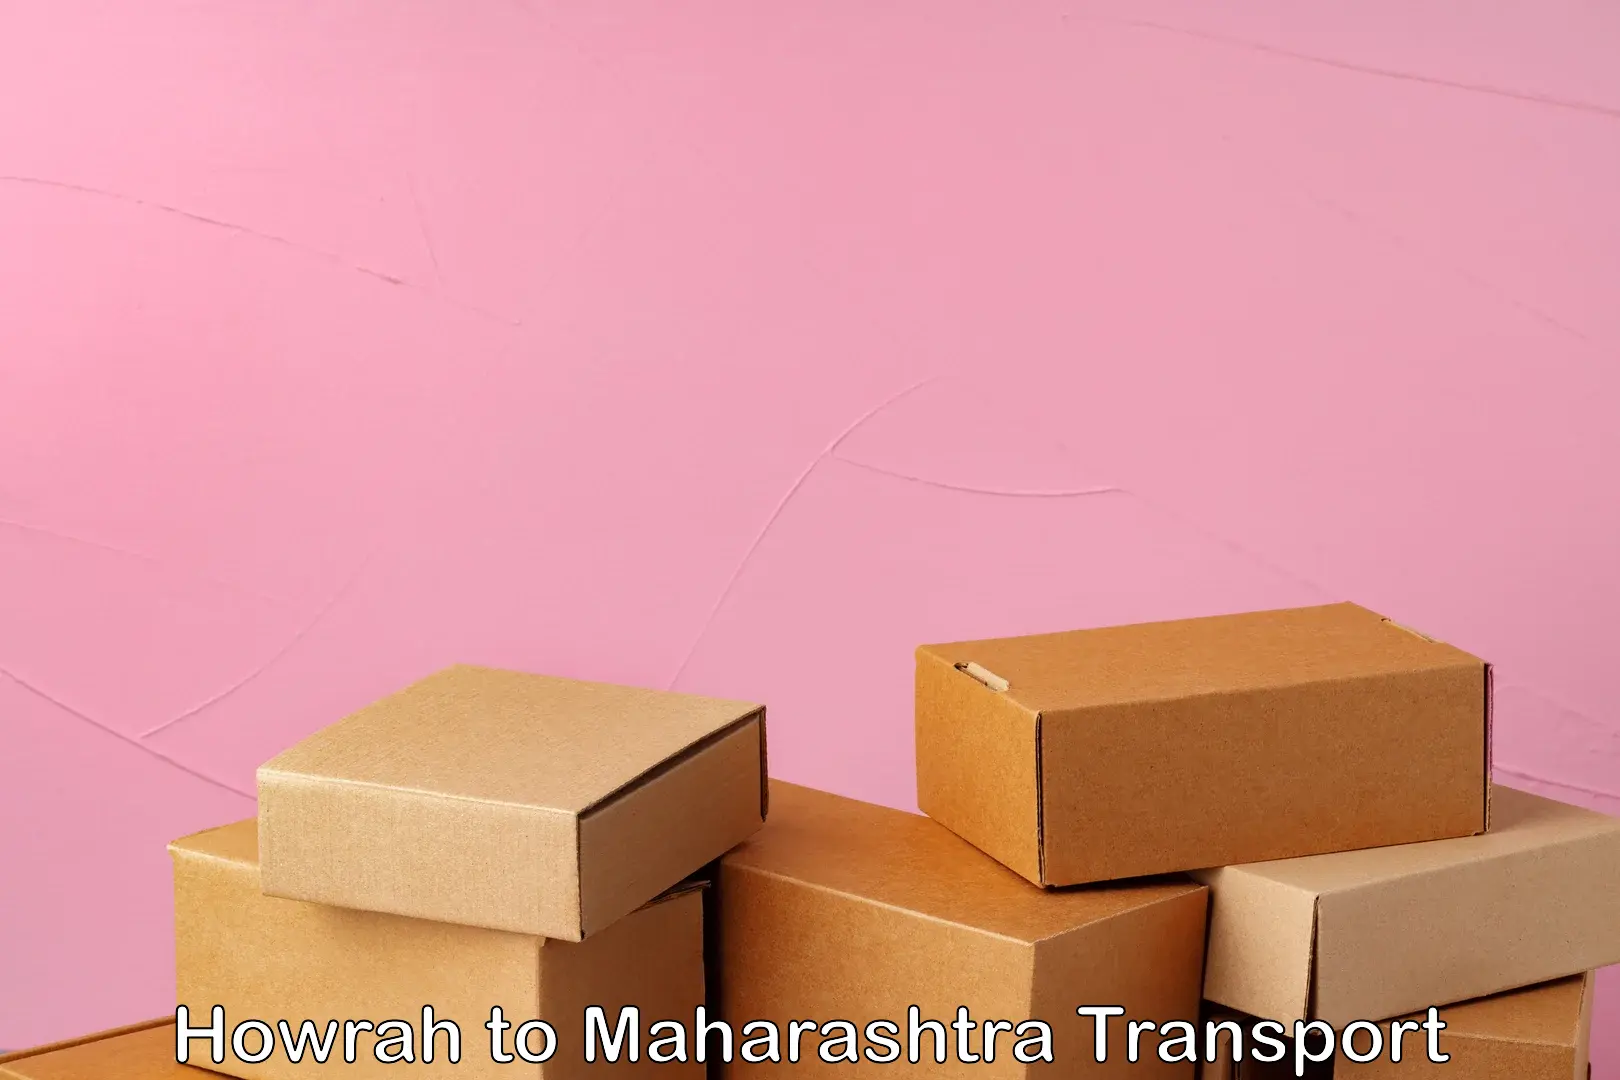 Delivery service Howrah to Maharashtra